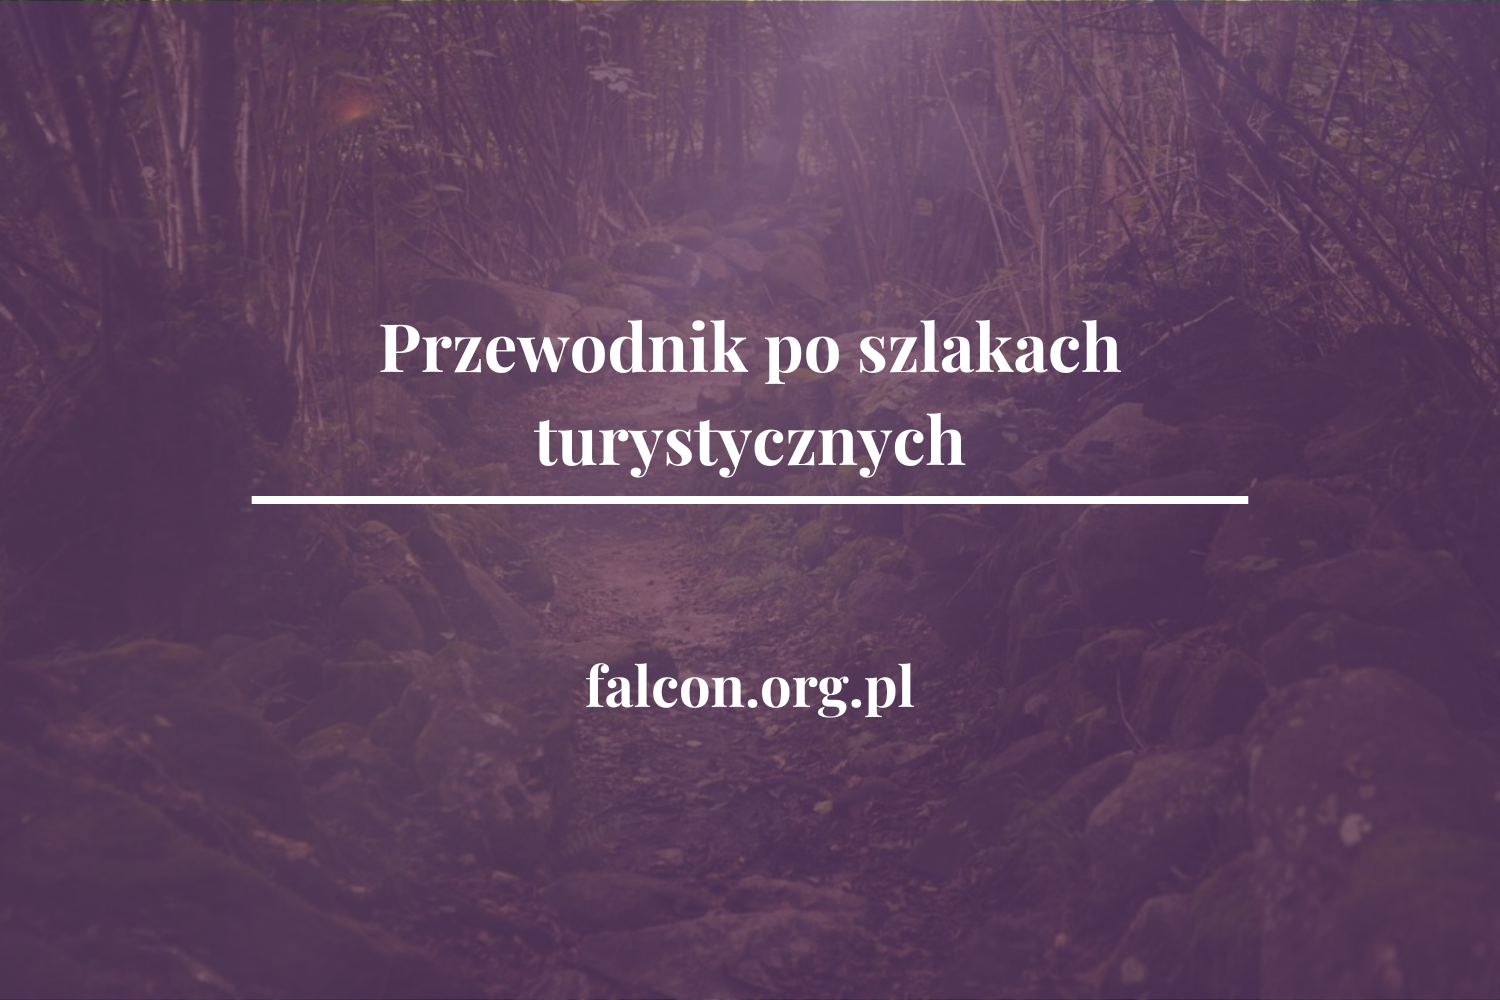 edycja_2_falcon